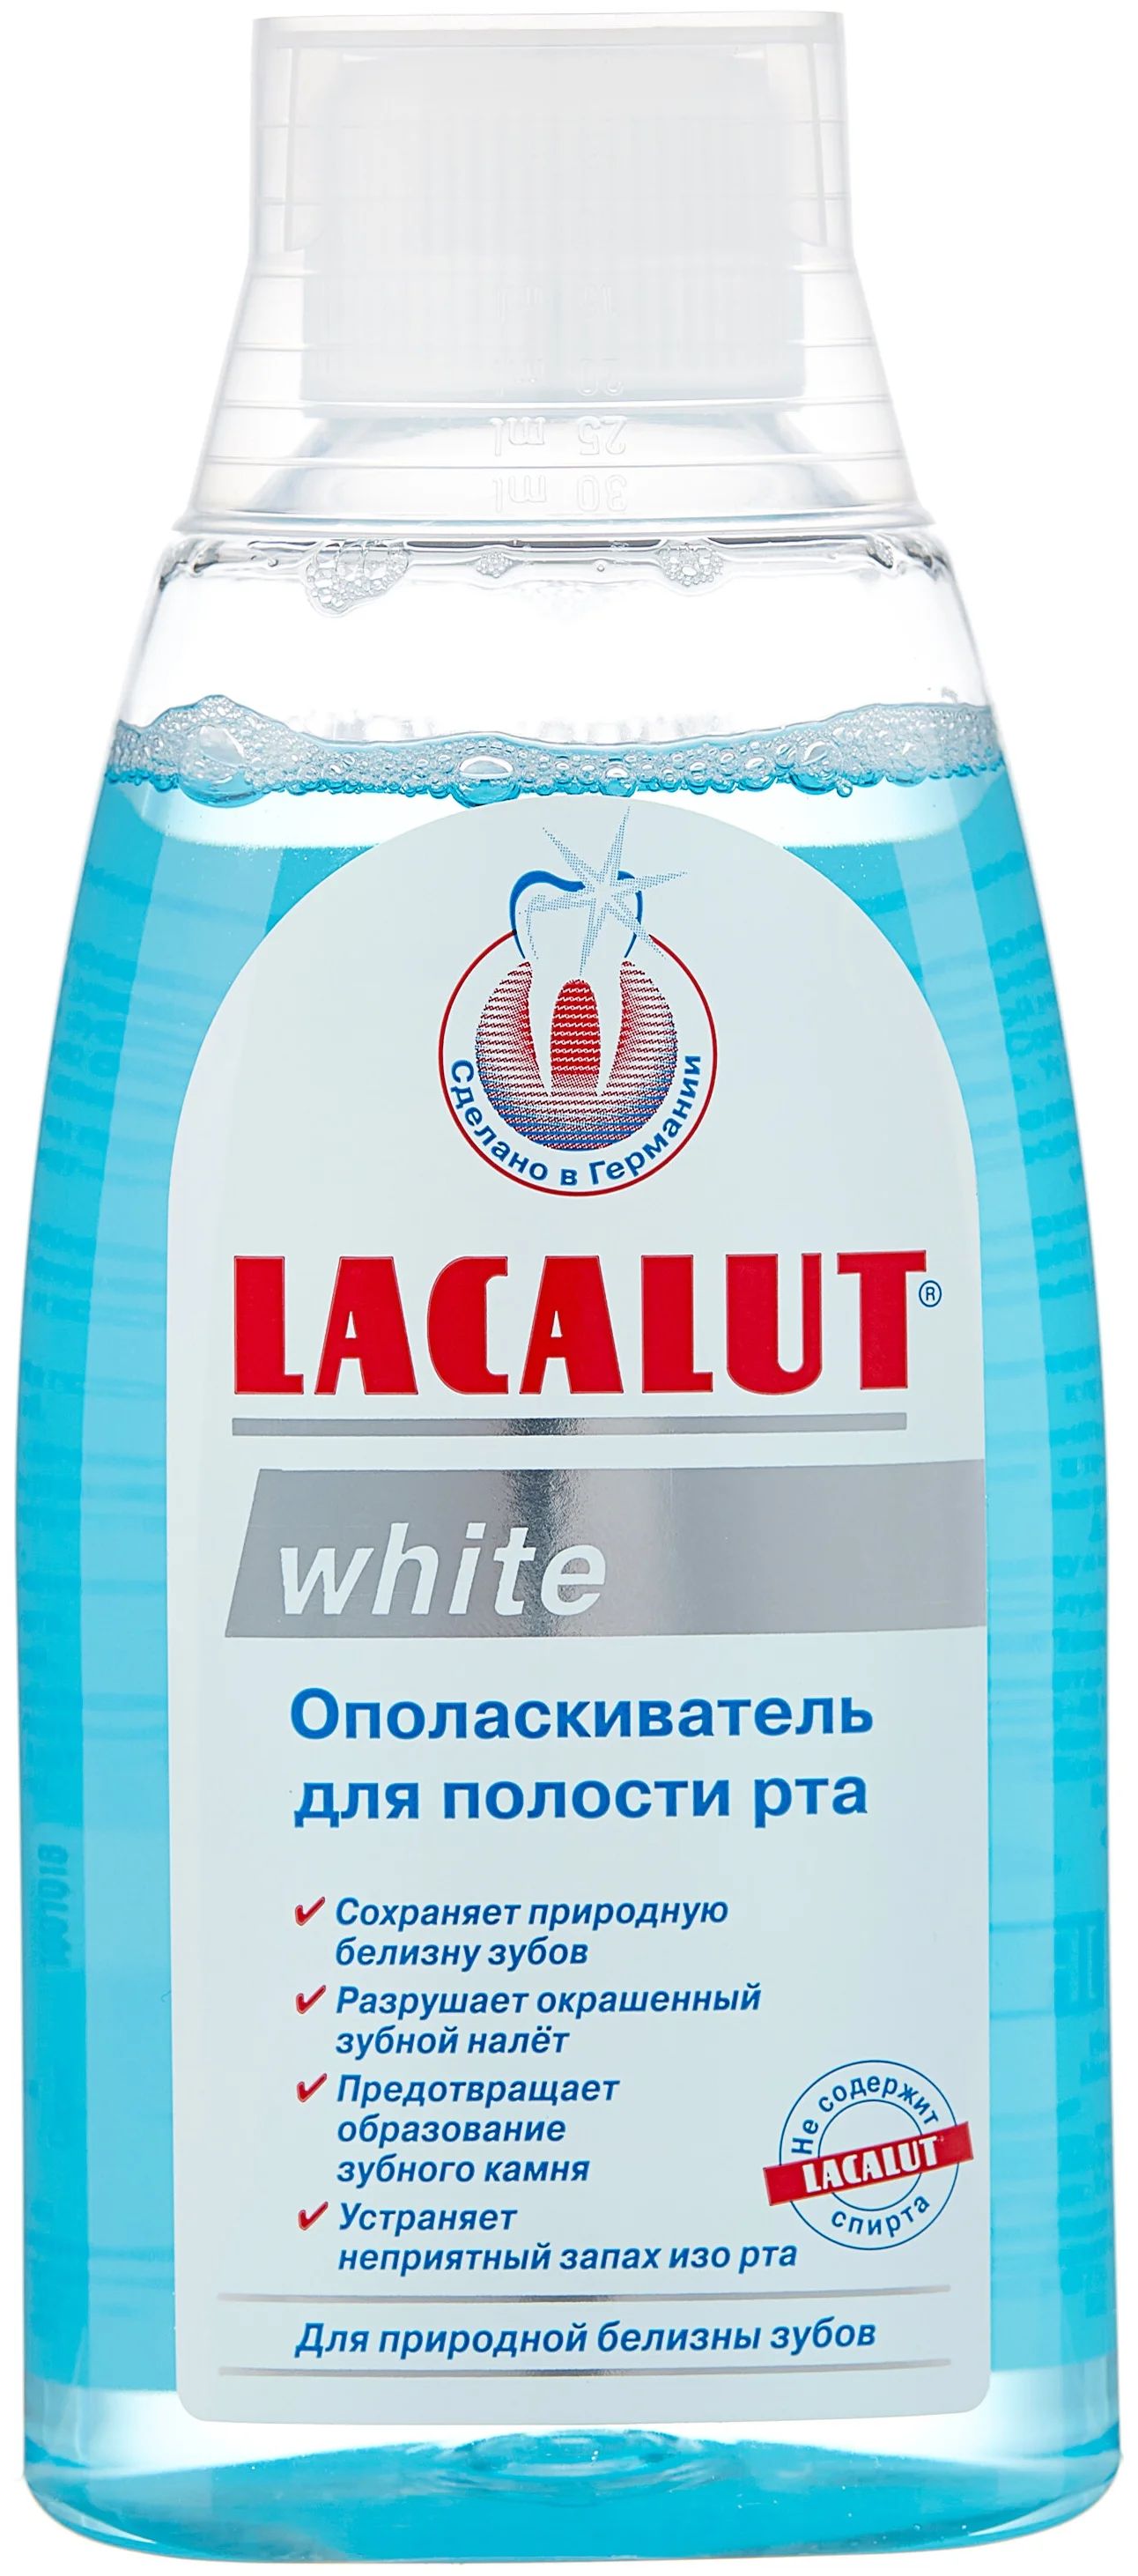 Ополаскиватель для полости рта Lacalut white, 300 мл